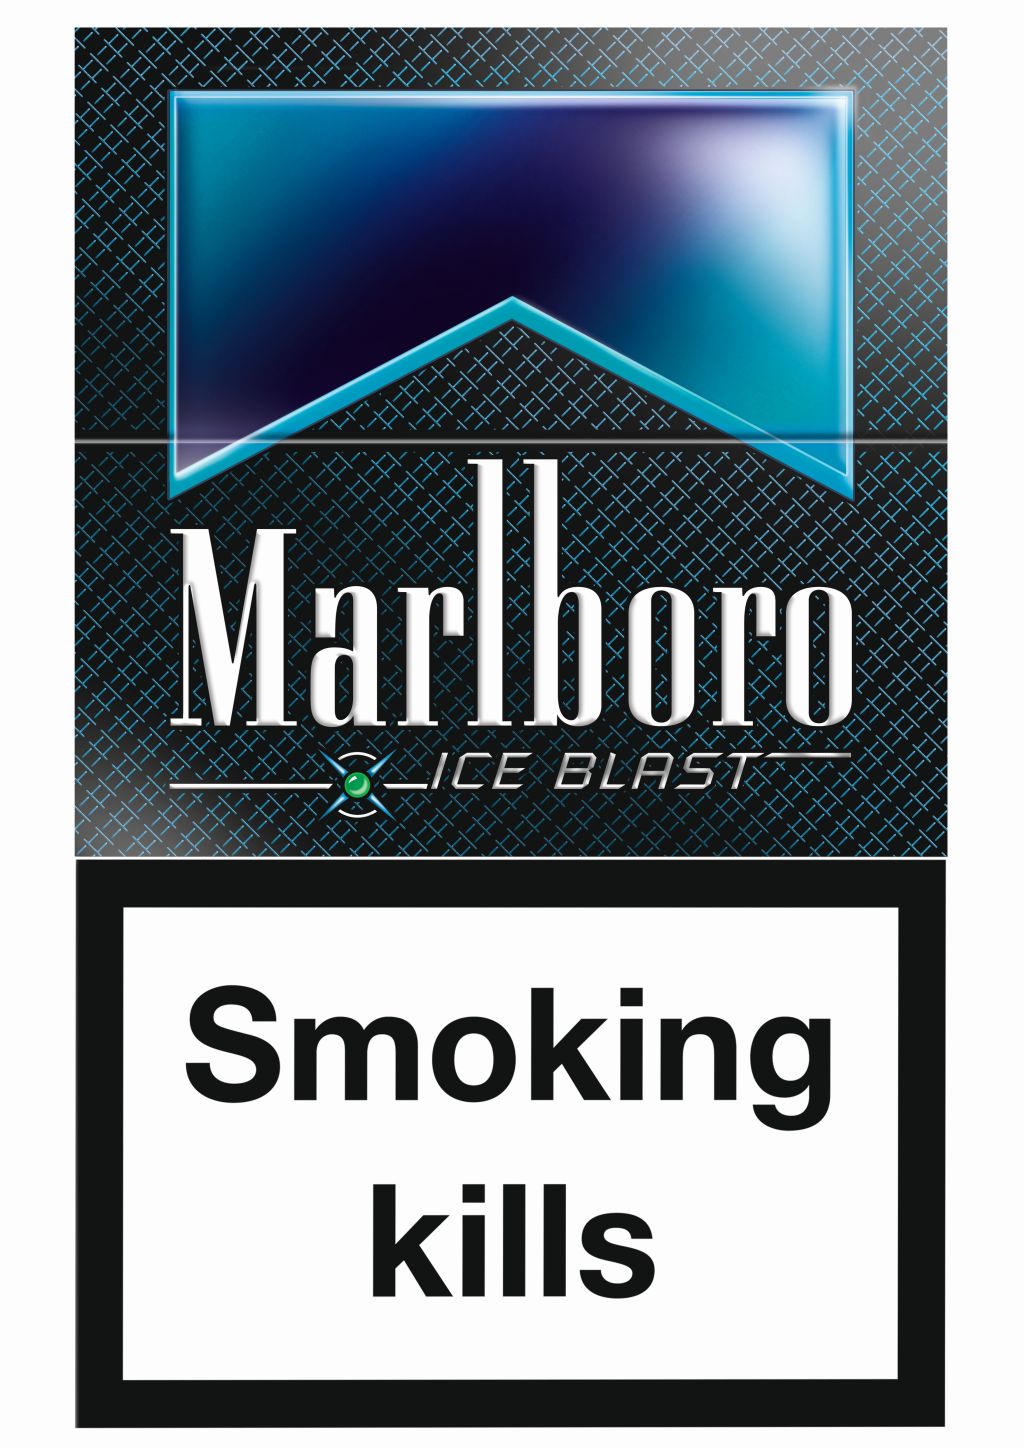 Philip Morris launches Marlboro Ice Blast capsule cigarette